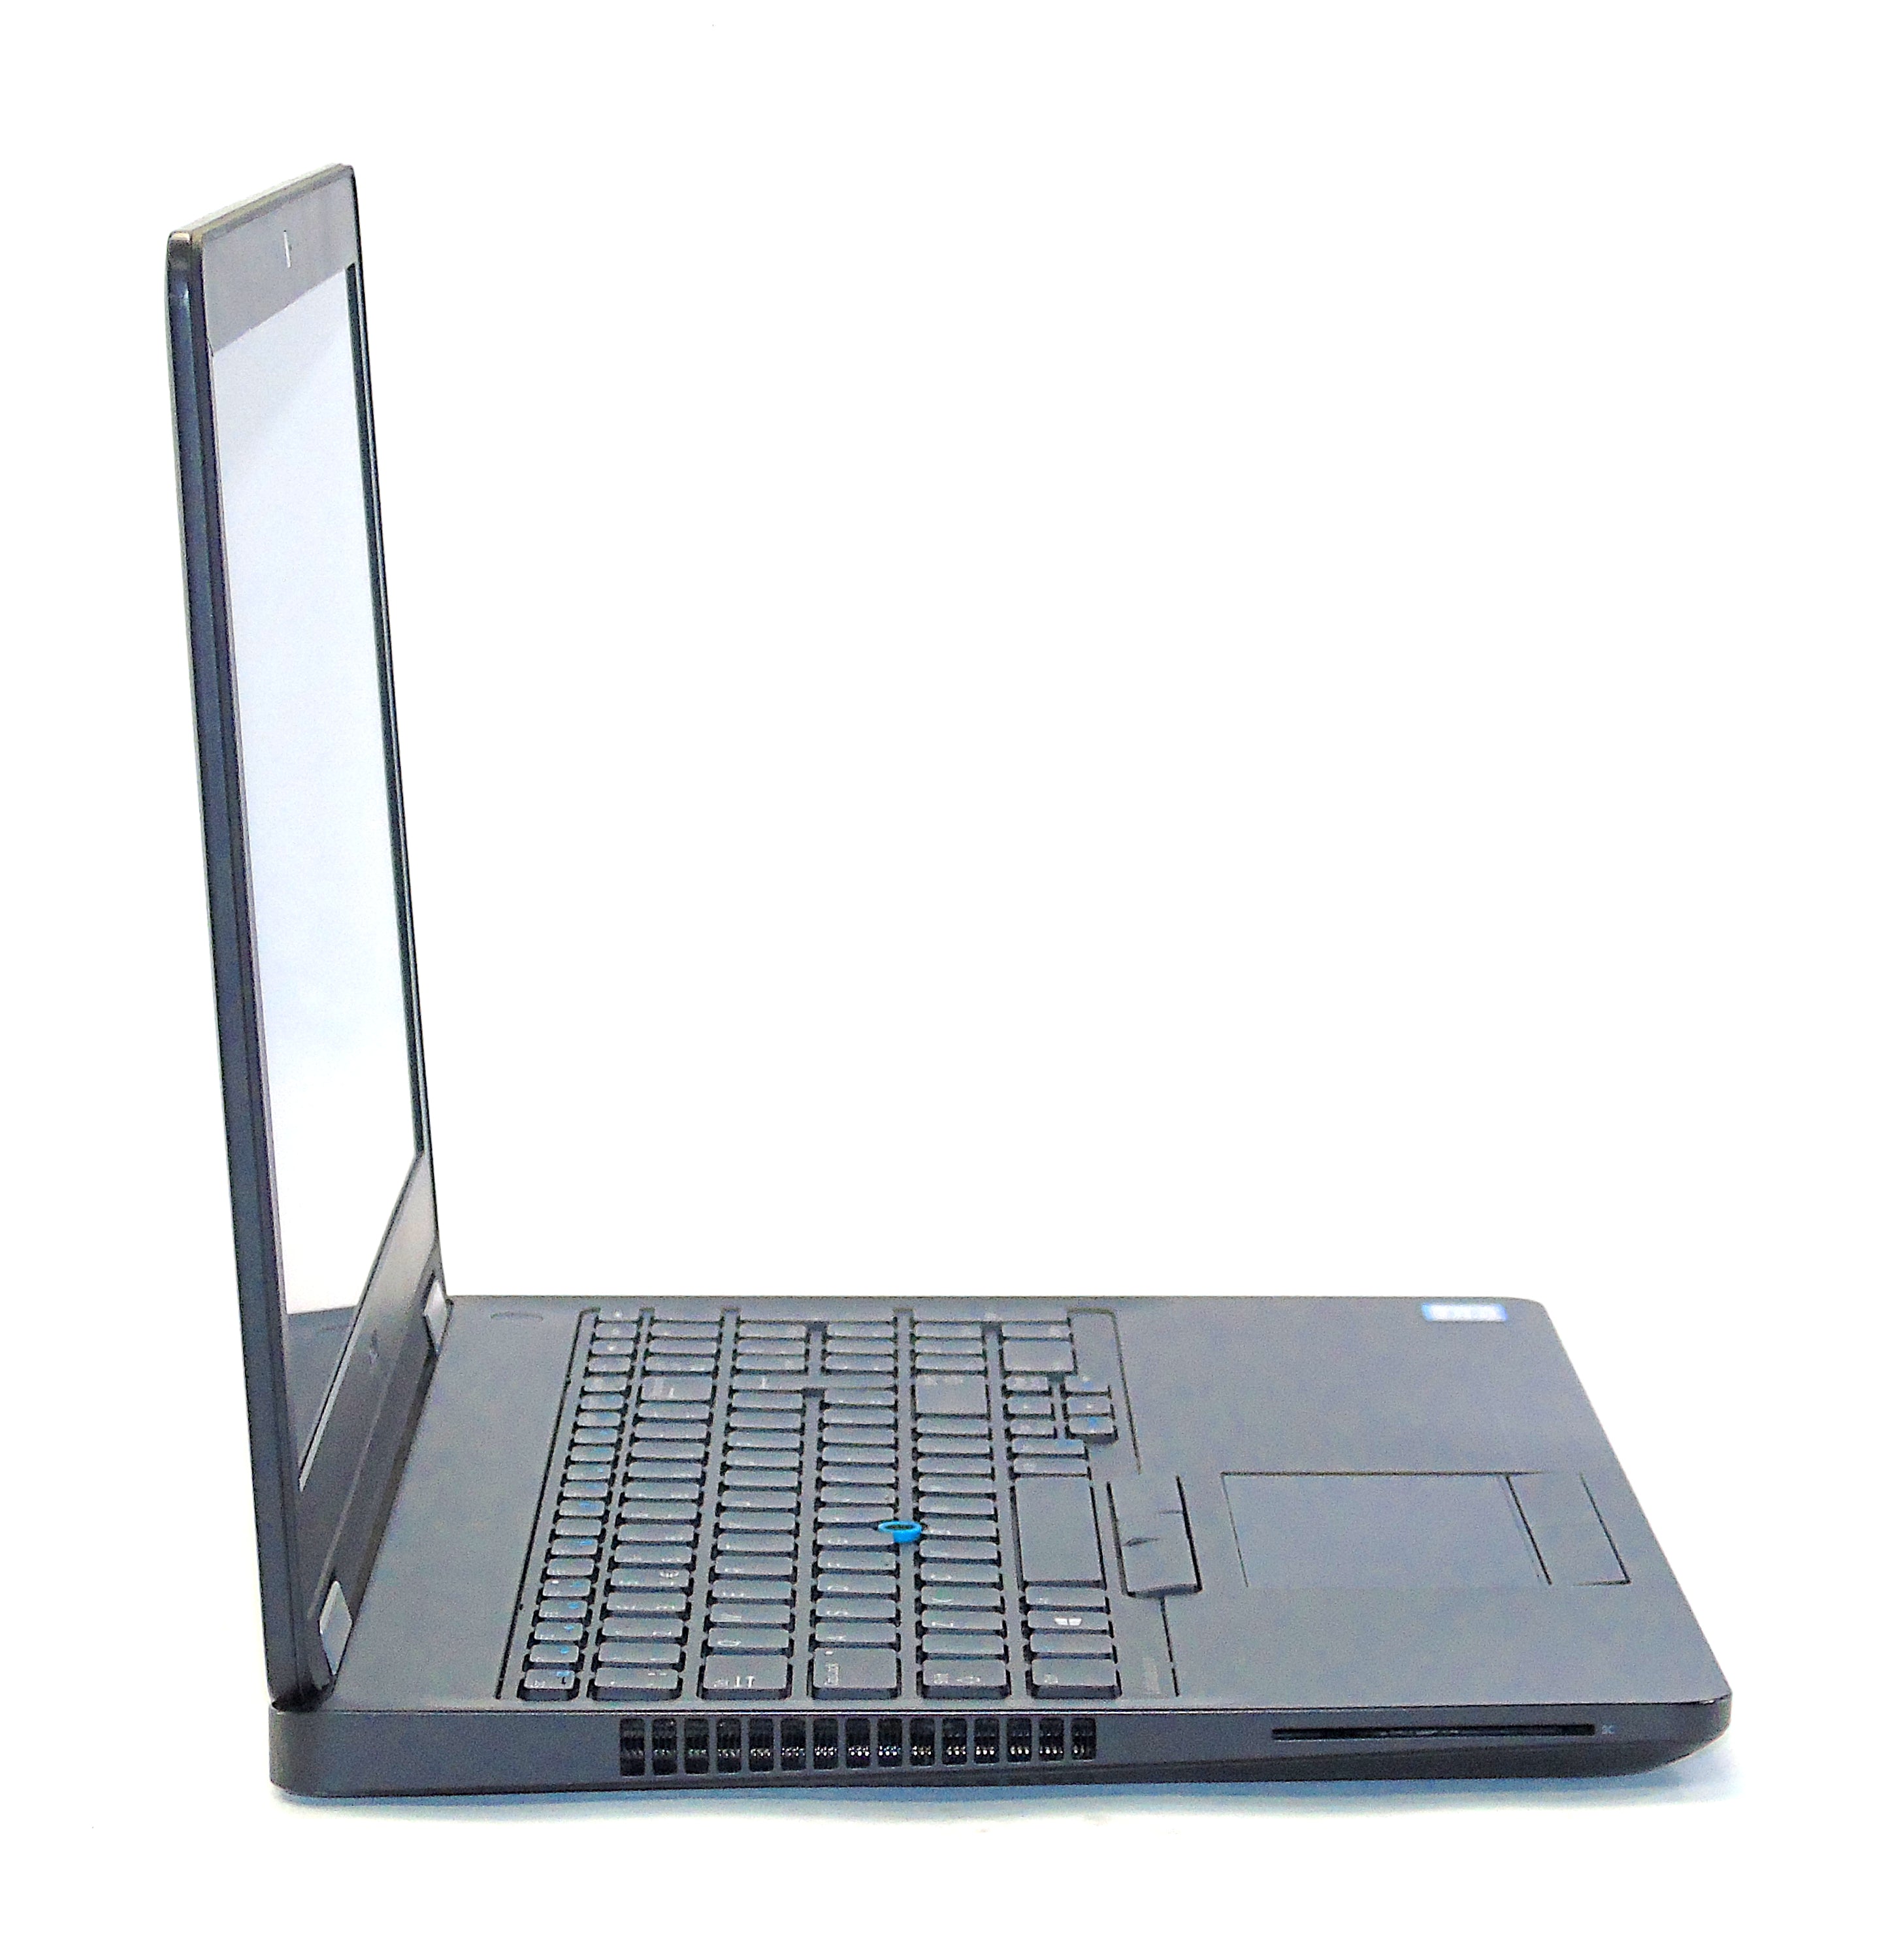 Dell Latitude E5570 Laptop, 15.6" i5 6th Gen, 8GB RAM, 256GB SSD